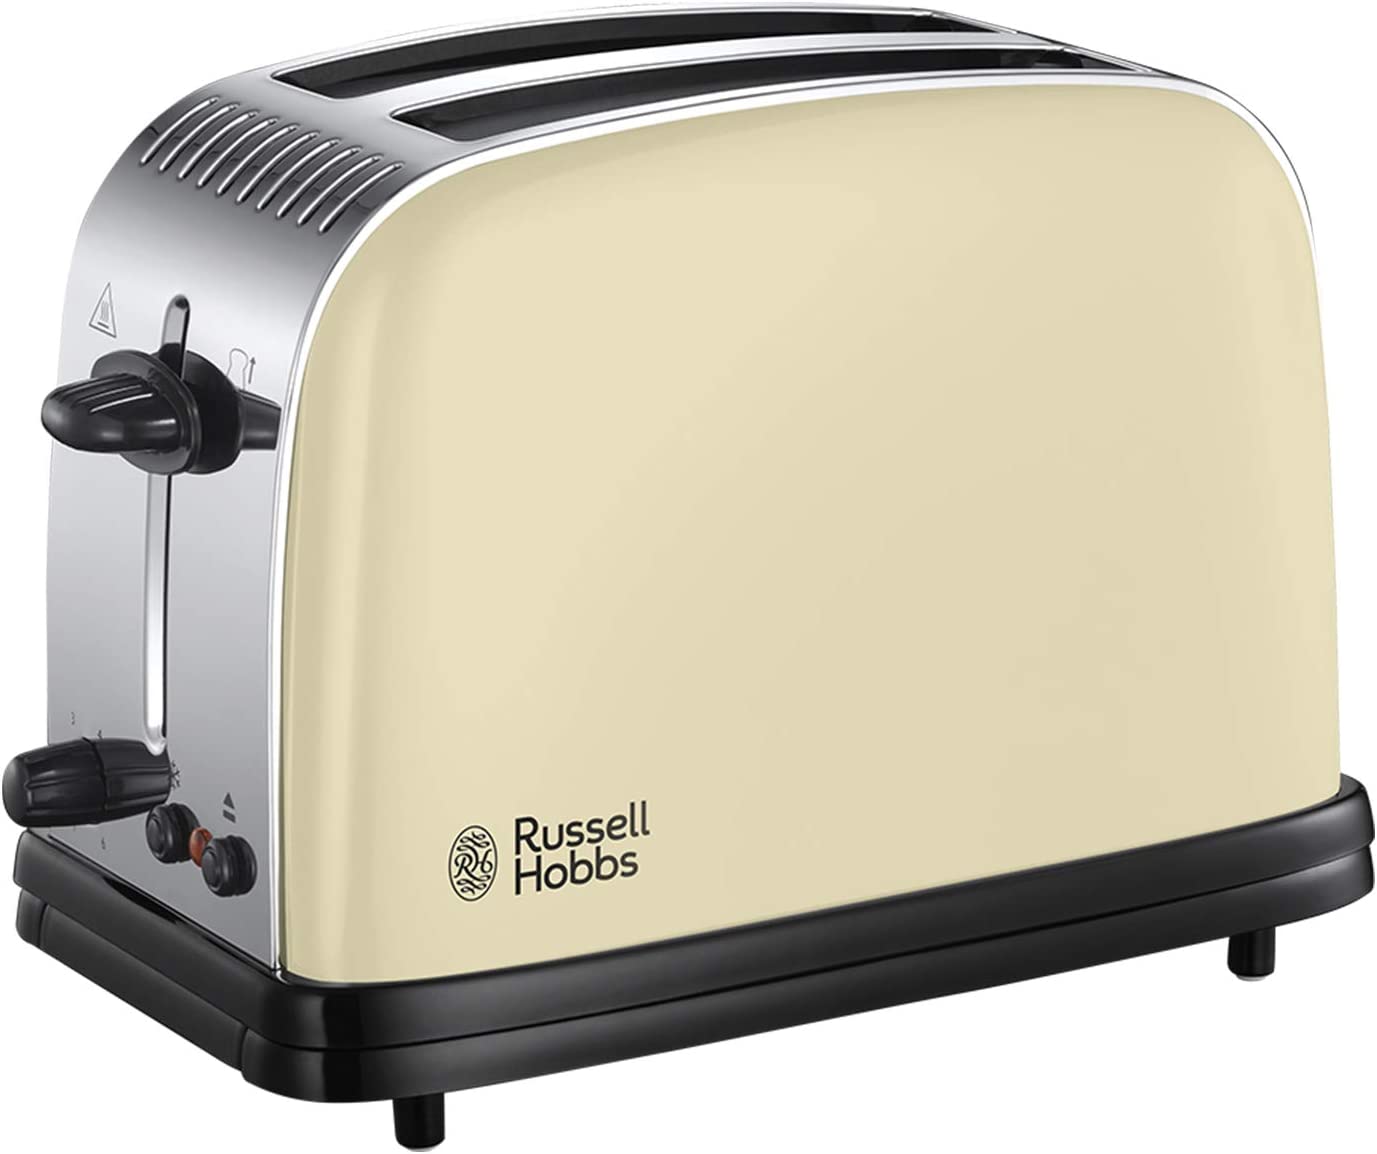 Russell Hobbs 23334 Stainless Steel Toaster, Cream RU-23334